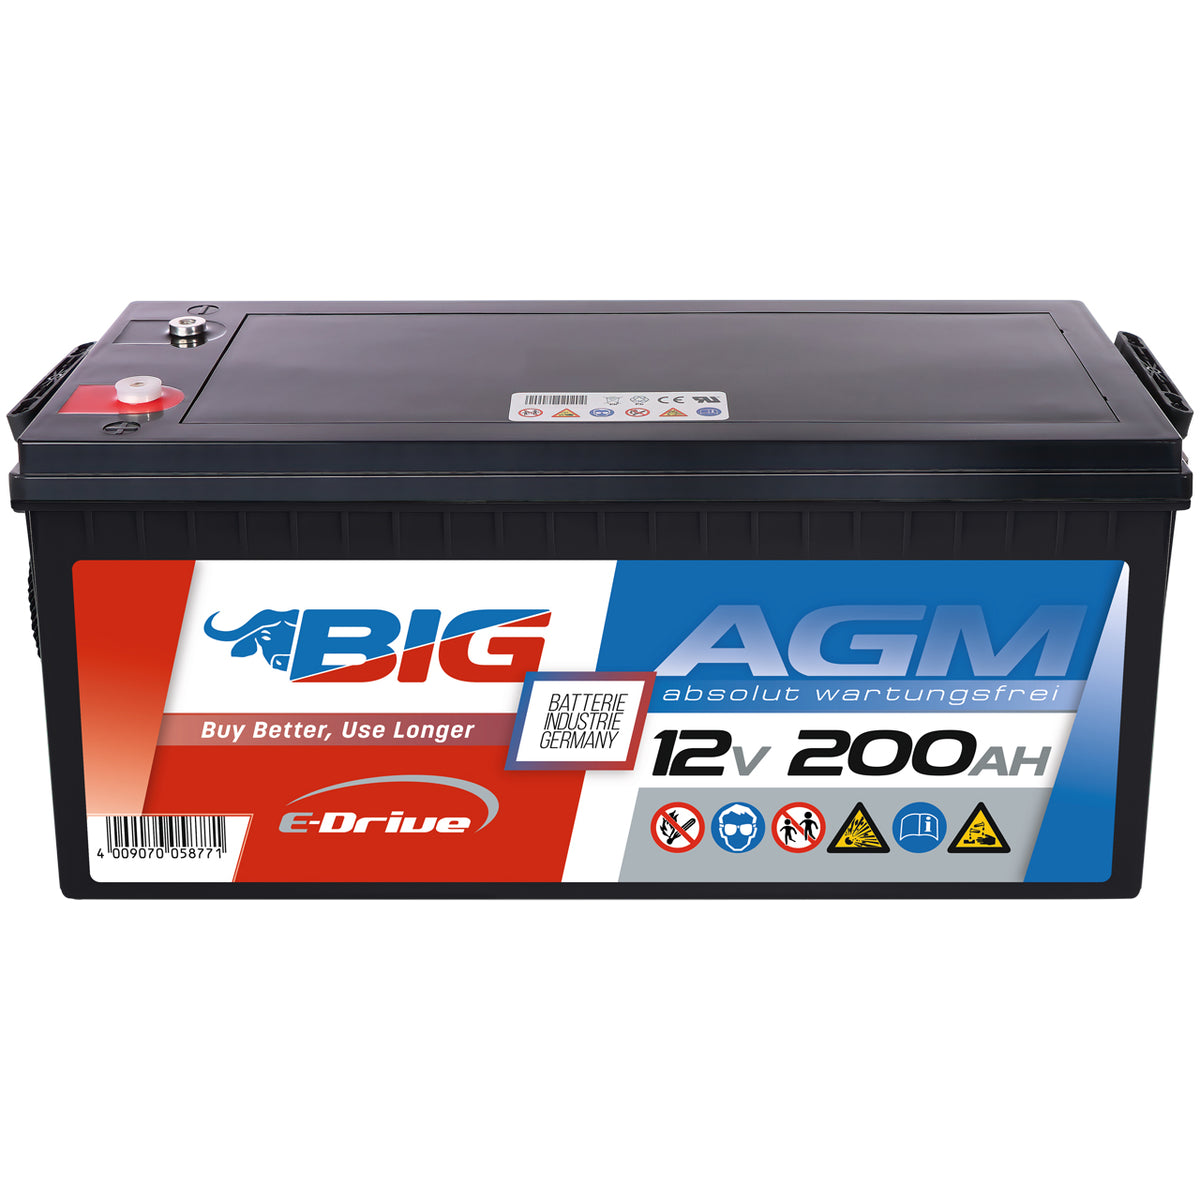 BIG E-Drive AGM 12V 200Ah